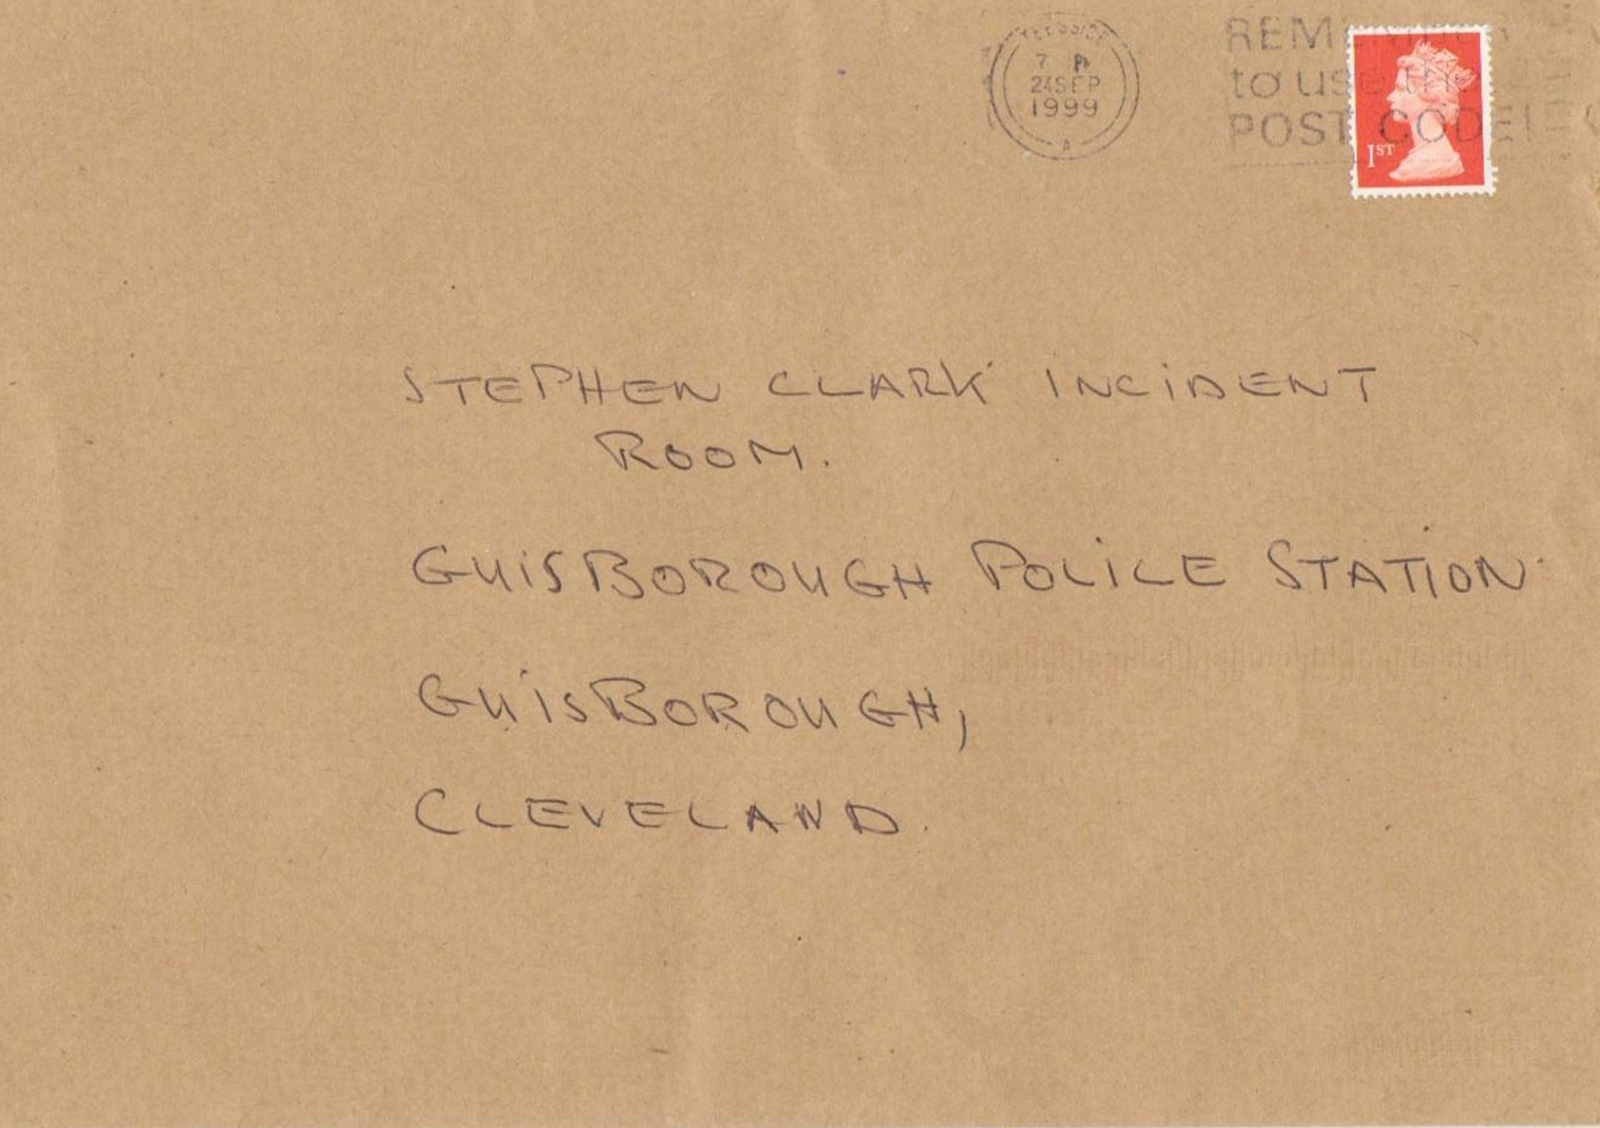 Clark inquiry letter